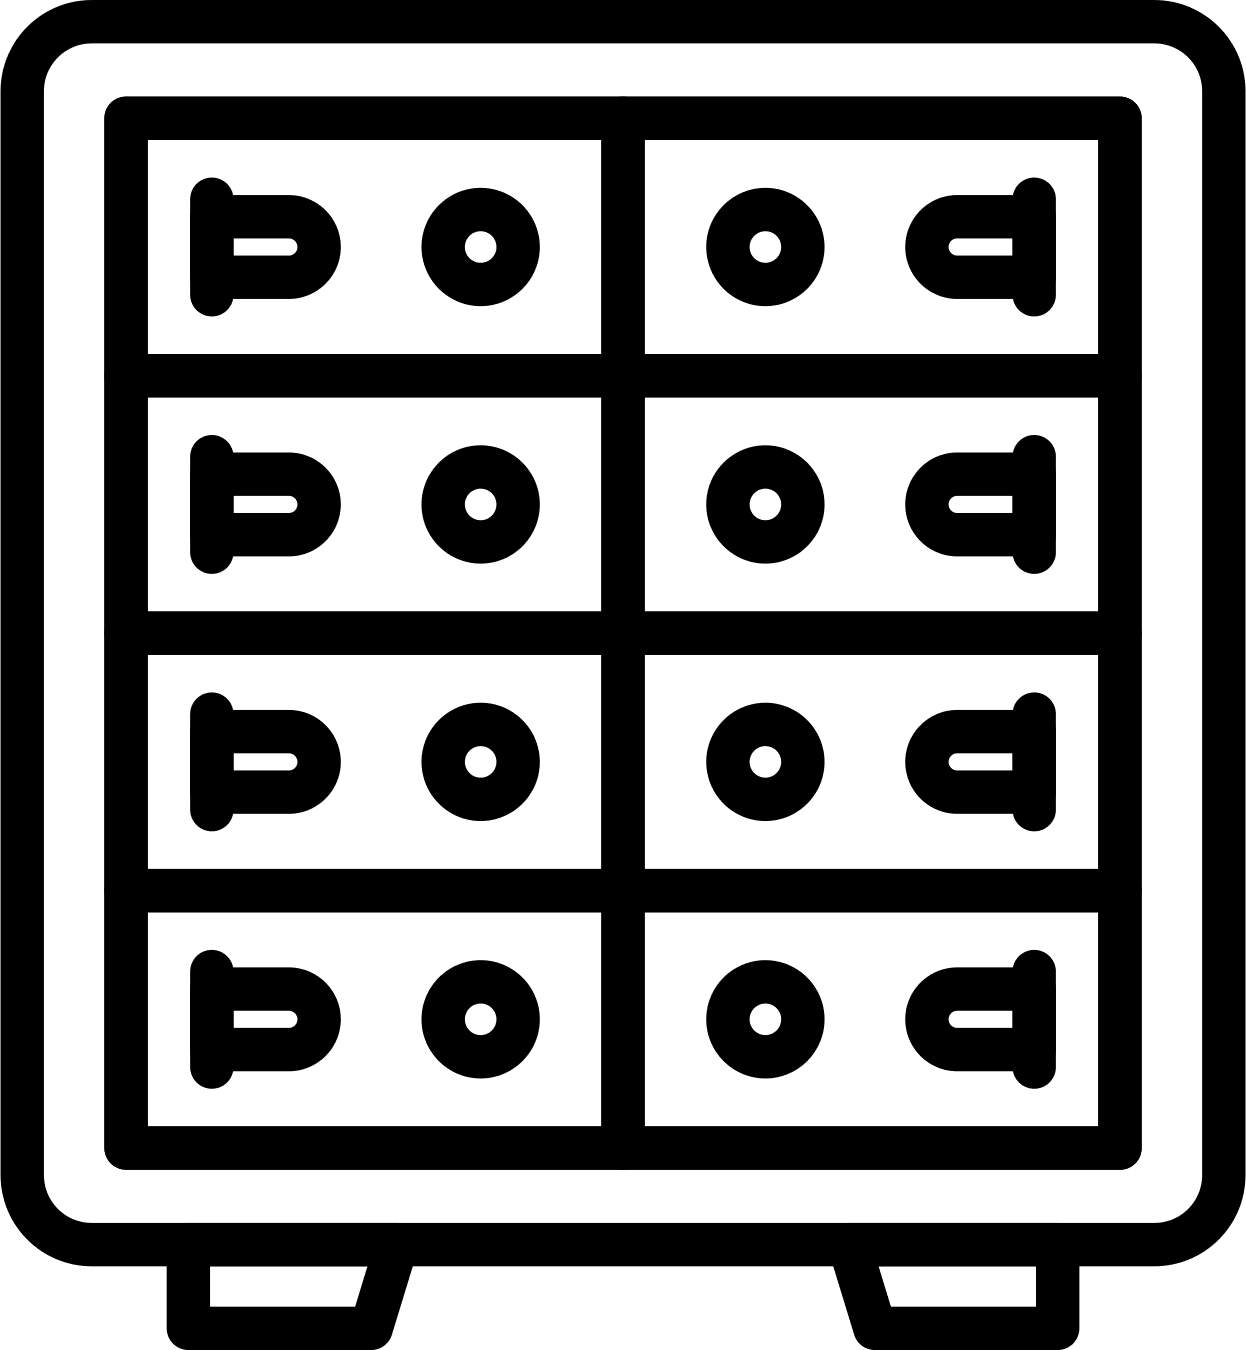 Representación gráfica de una caja fuerte con casilleros